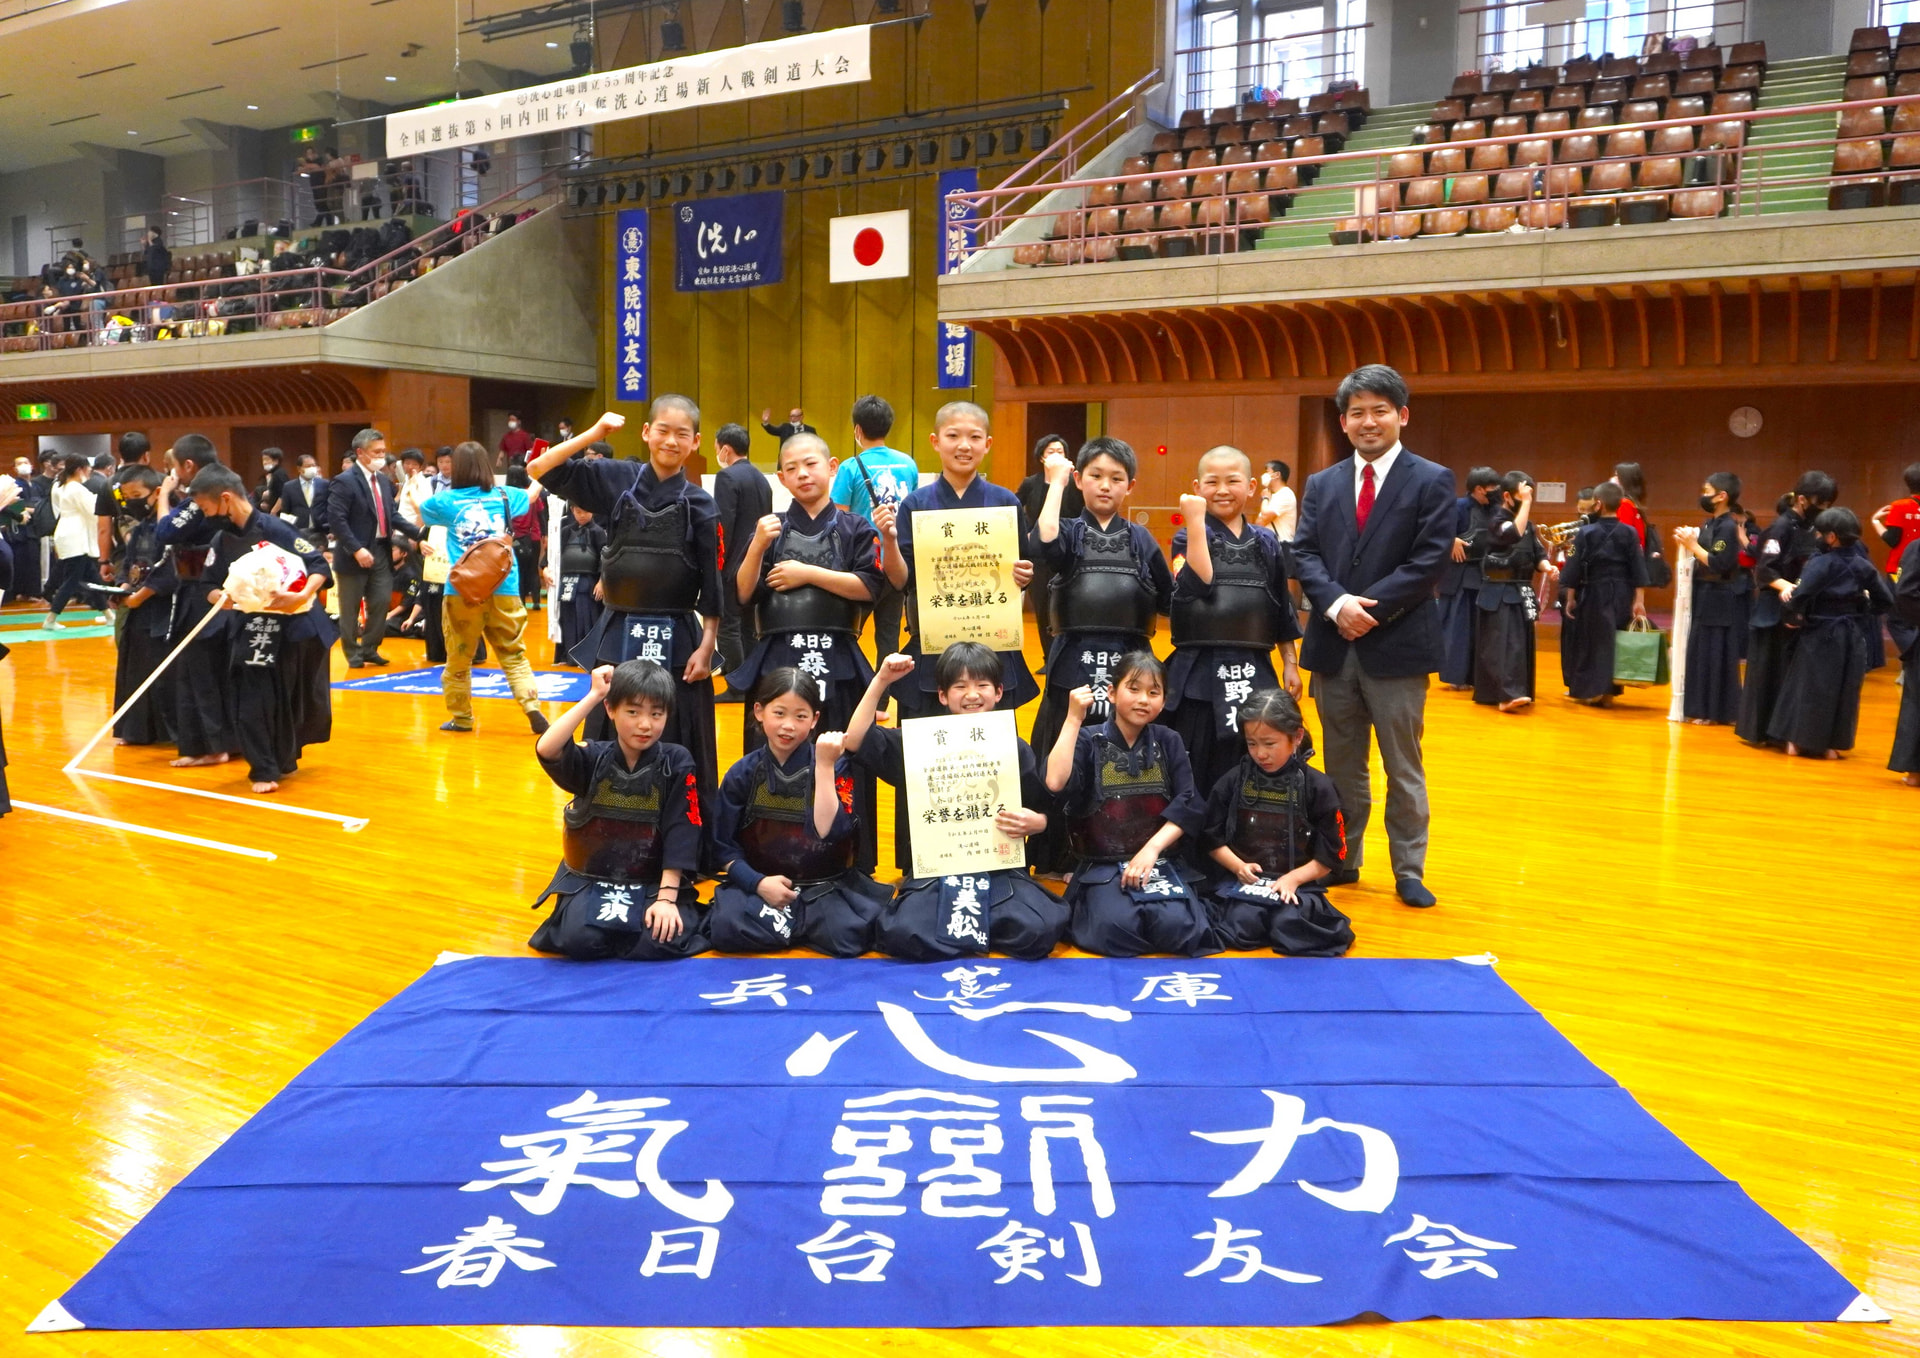 全国選抜第8回内田杯争奪洗心道場新人戦剣道大会に参加しました。